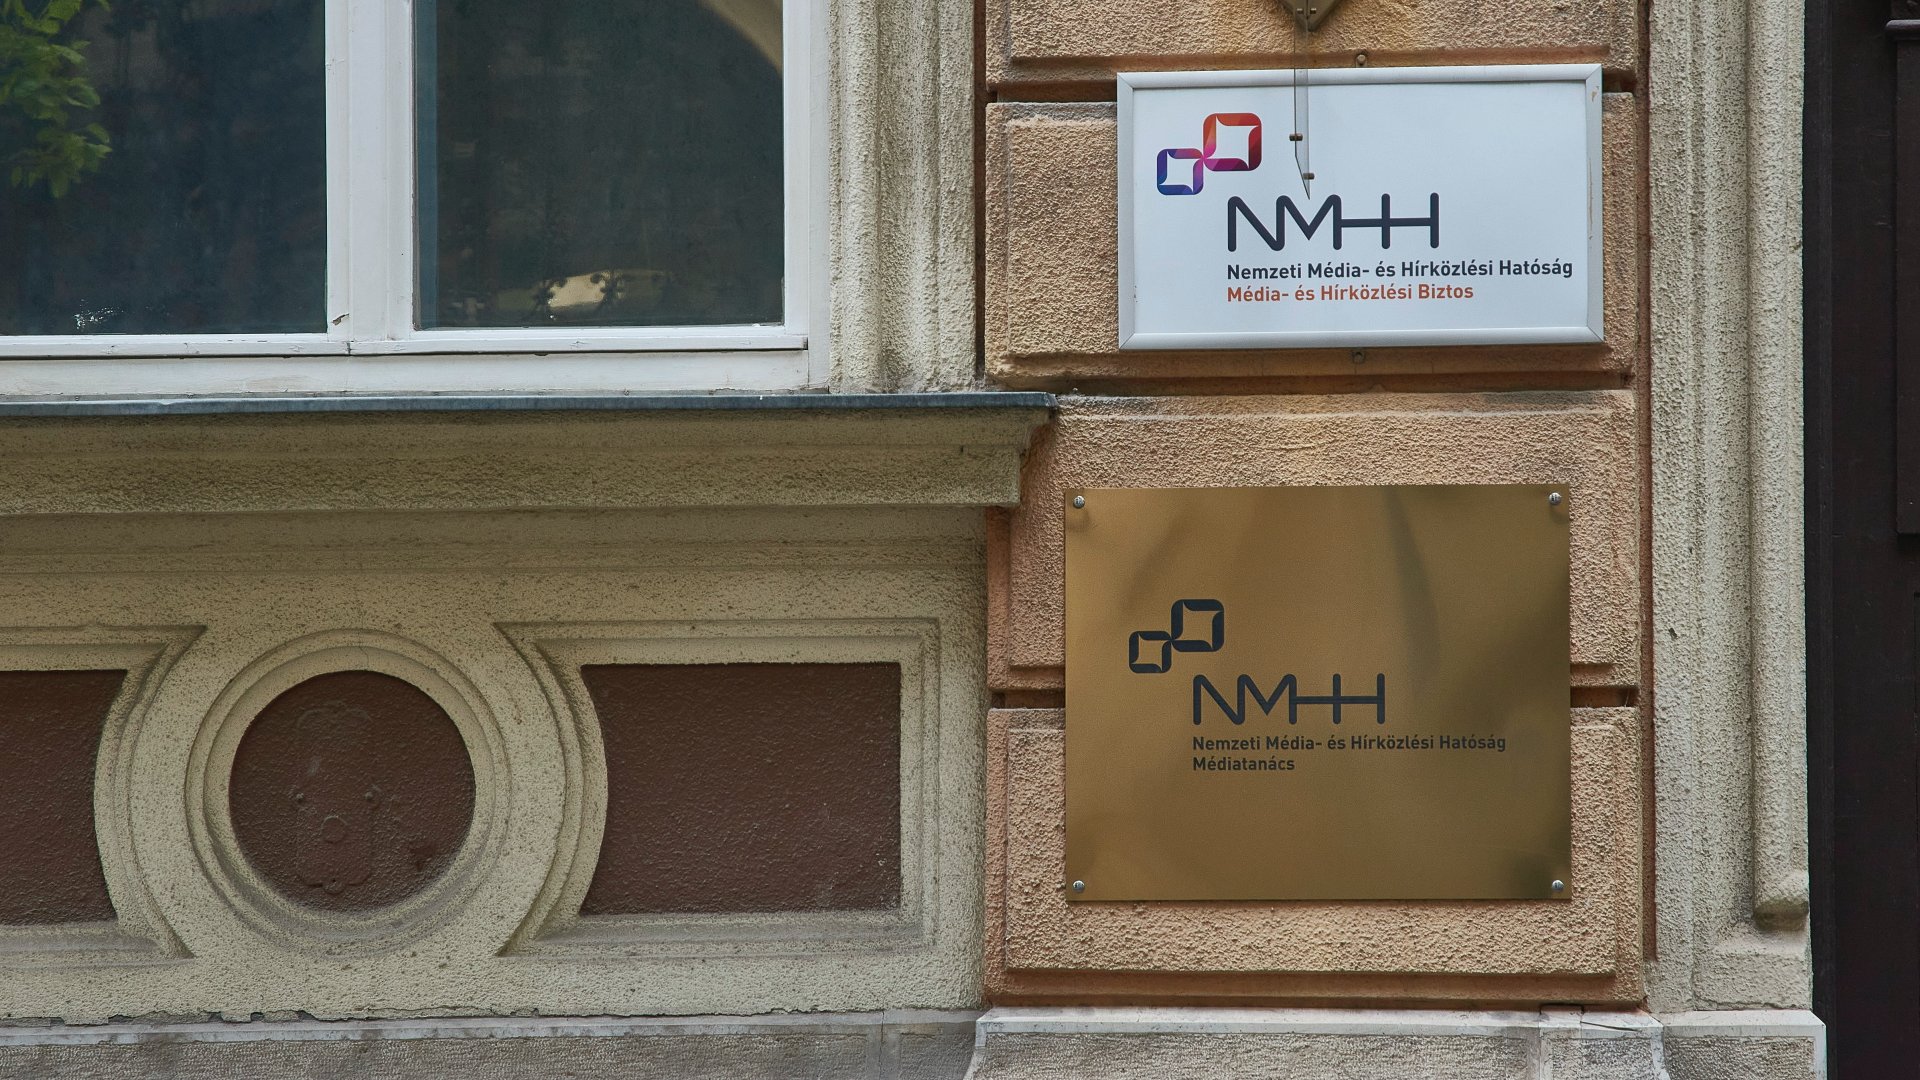 Cégtáblák a Nemzeti Média- és Hírközlési Hatóság (NMHH) Médiatanácsának székhelyén a fõváros VIII. kerületében, a Reviczky utcában